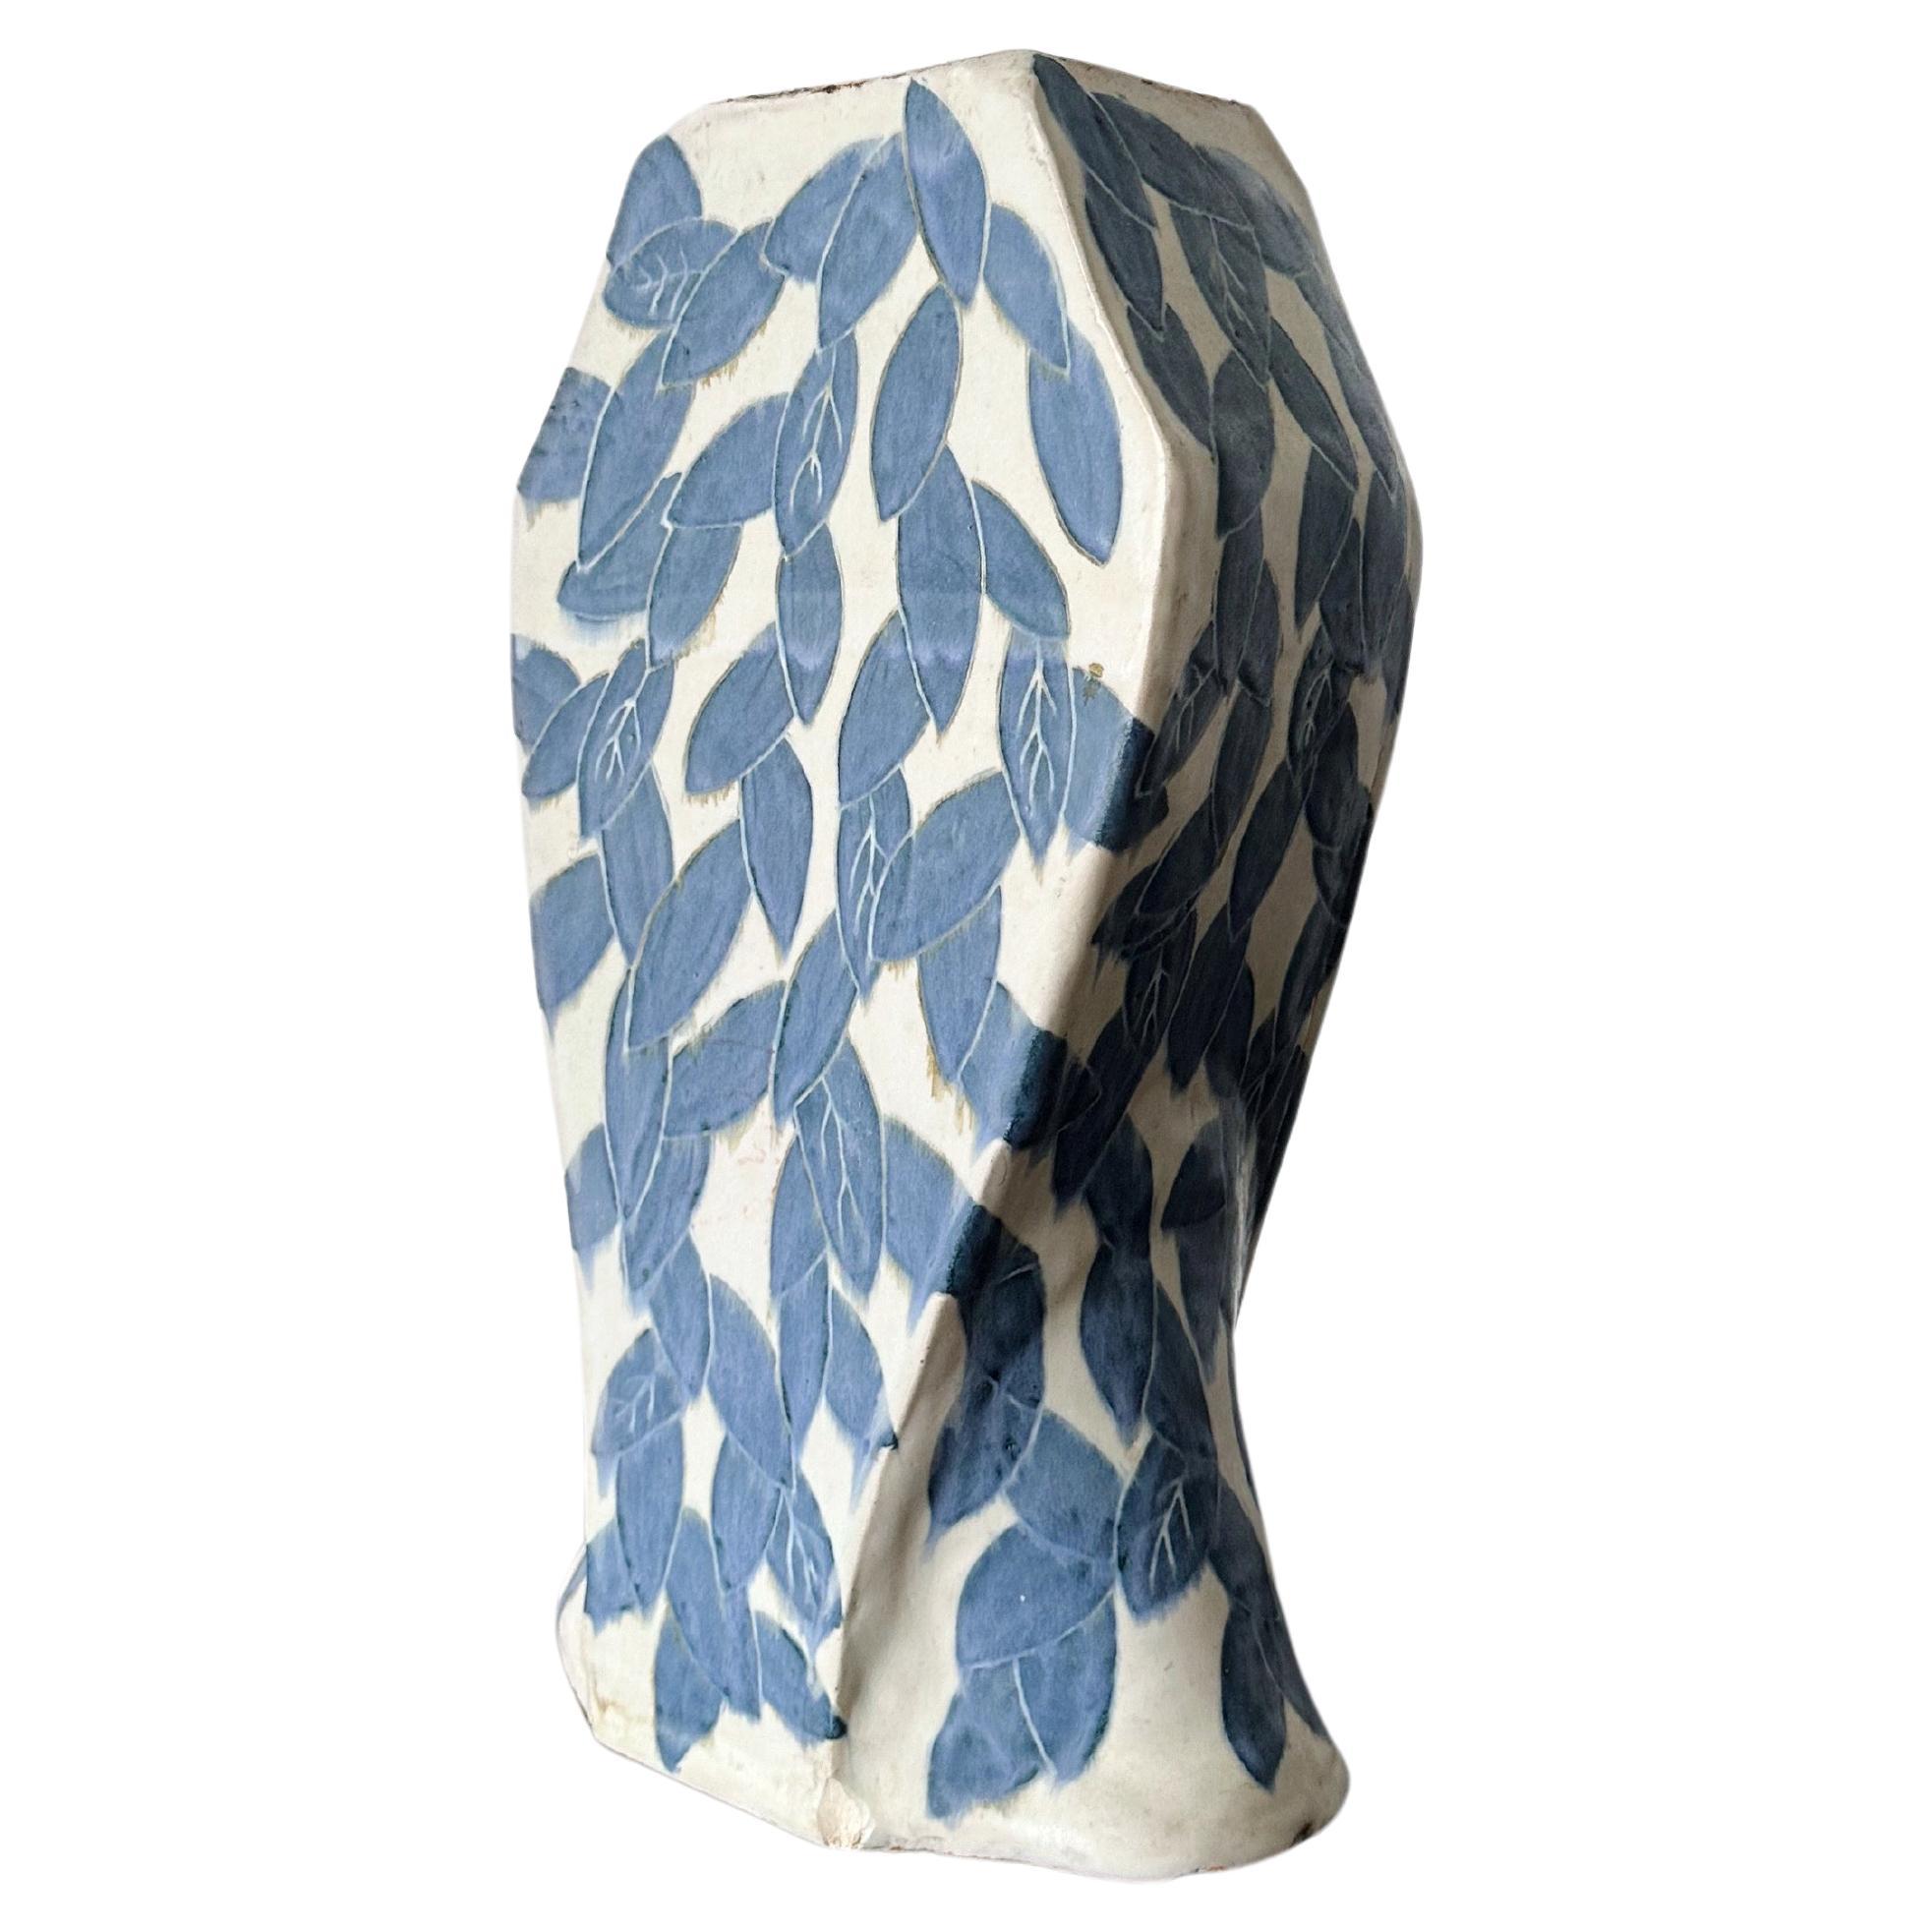 Grand vase en céramique de style méditerranéen imprimé feuilles blanches et bleues